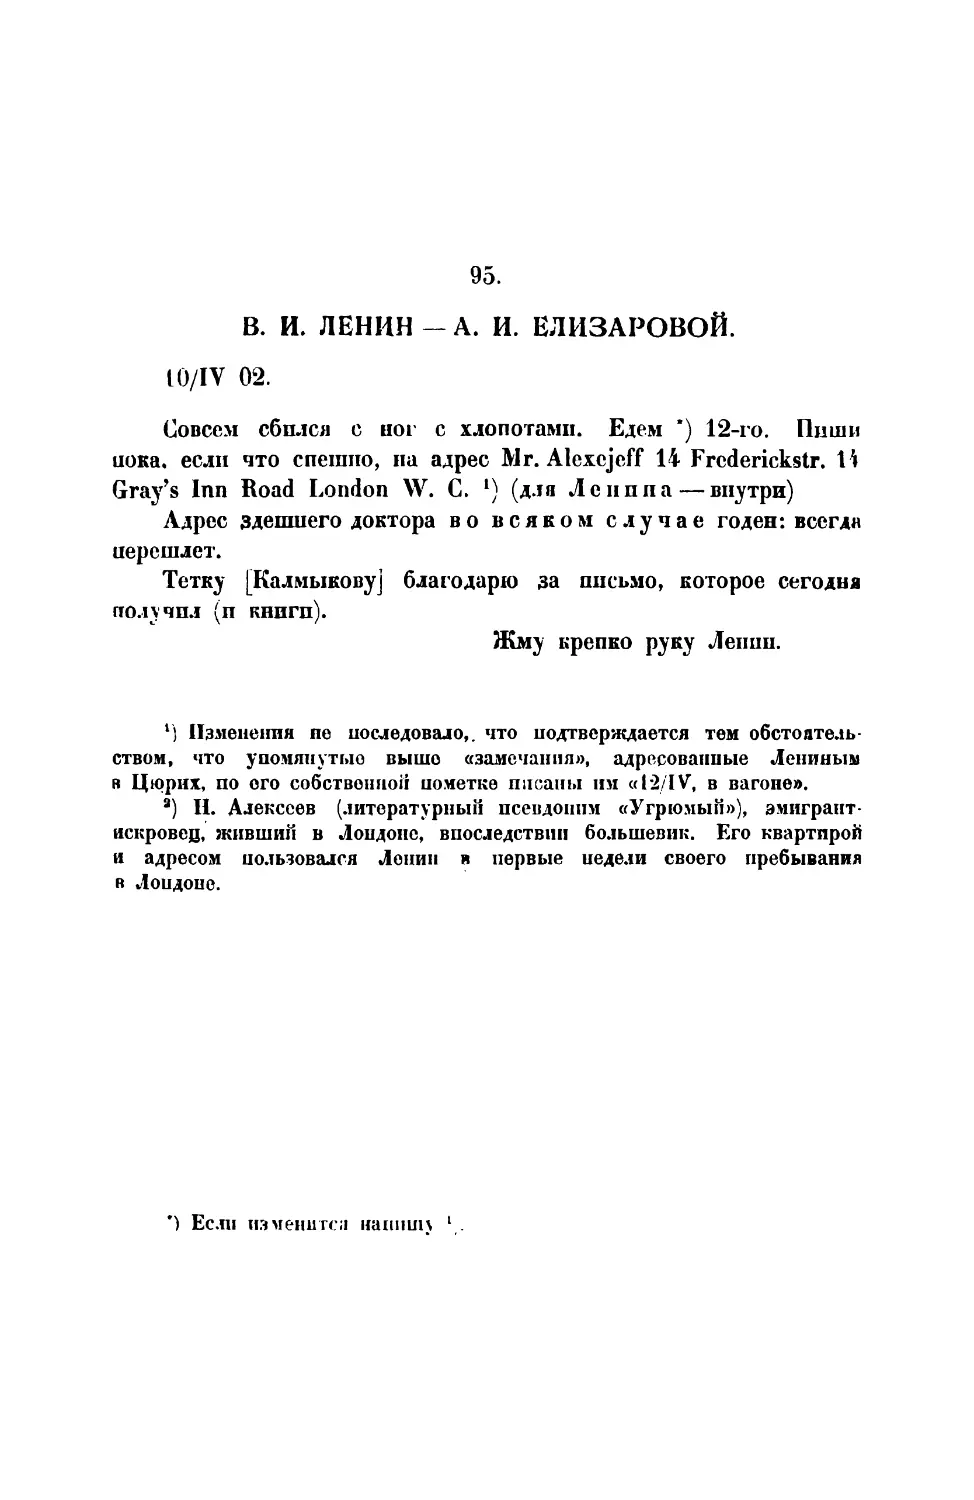 95. В. И. Ленин.— Письмо А. Елизаровой от 10 IV 1902 г.